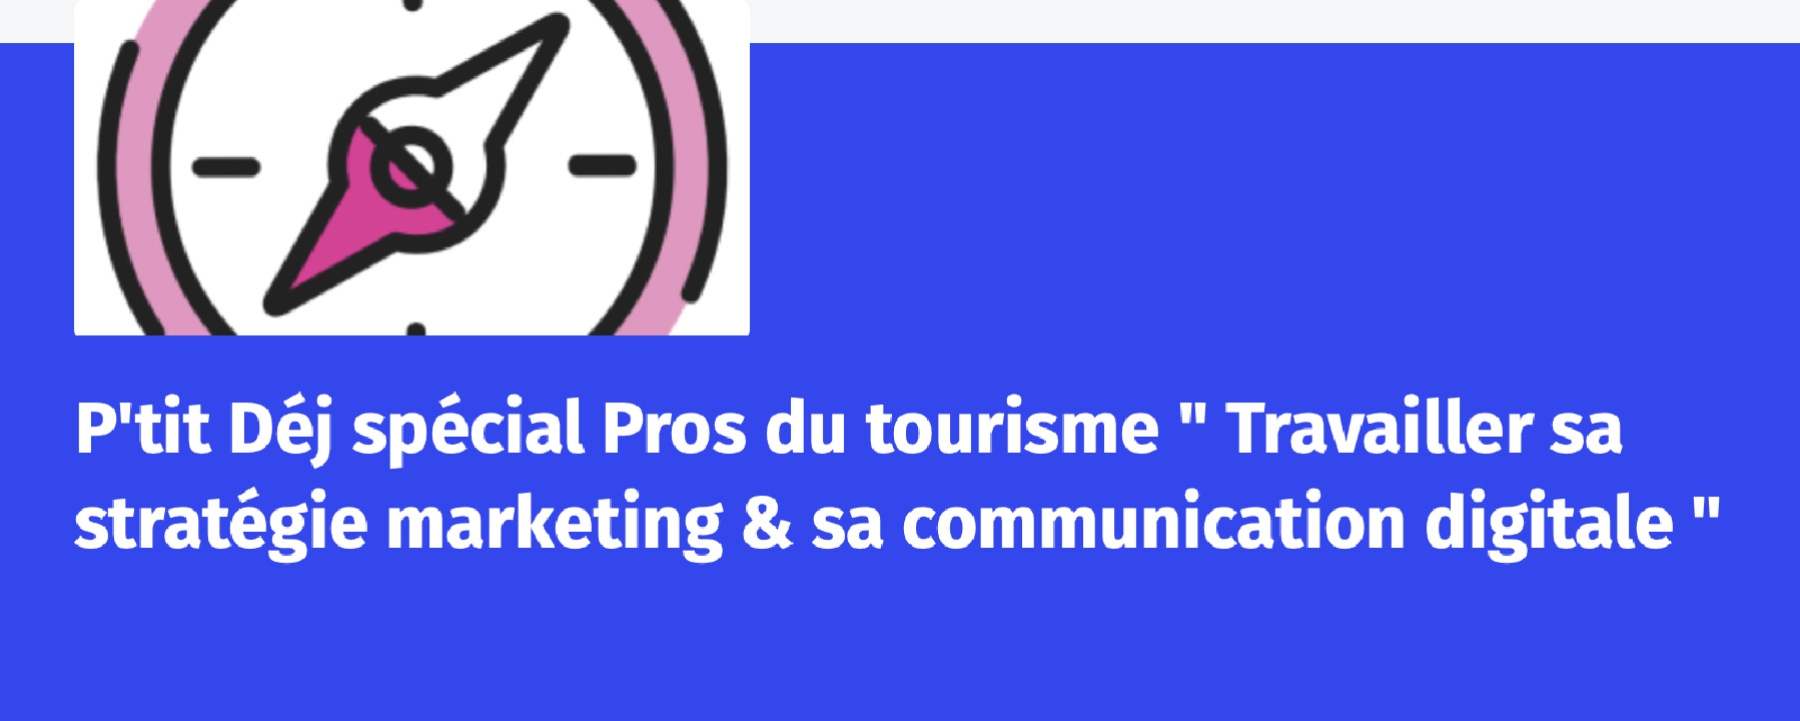 P'tit Déj spécial Pros du tourisme "Travailler sa stratégie marketing & sa communication digitale"